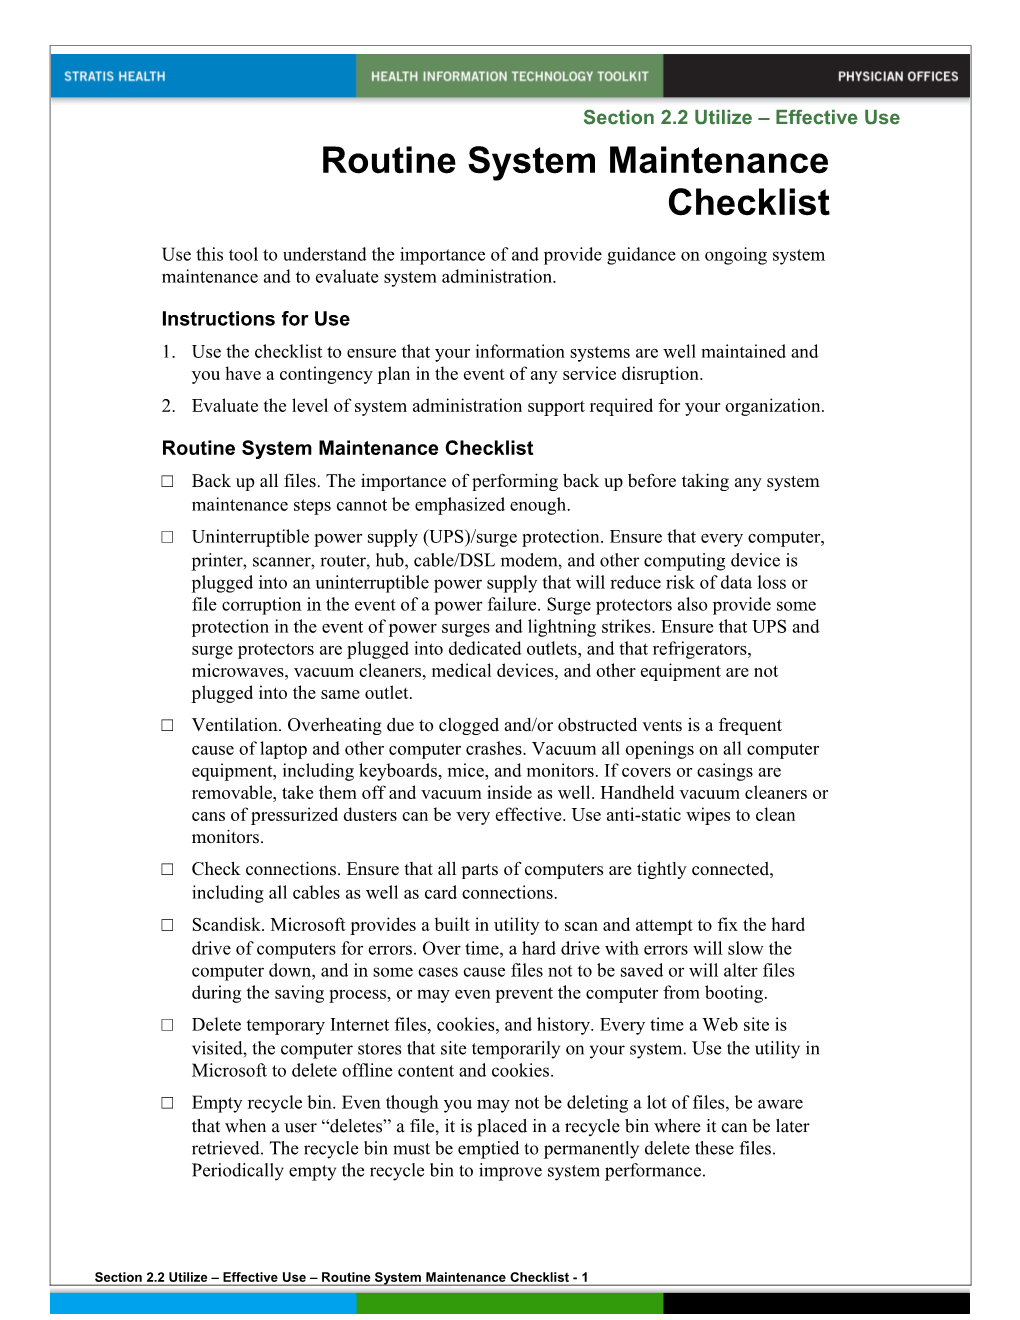 Routine System Maintenance Checklist